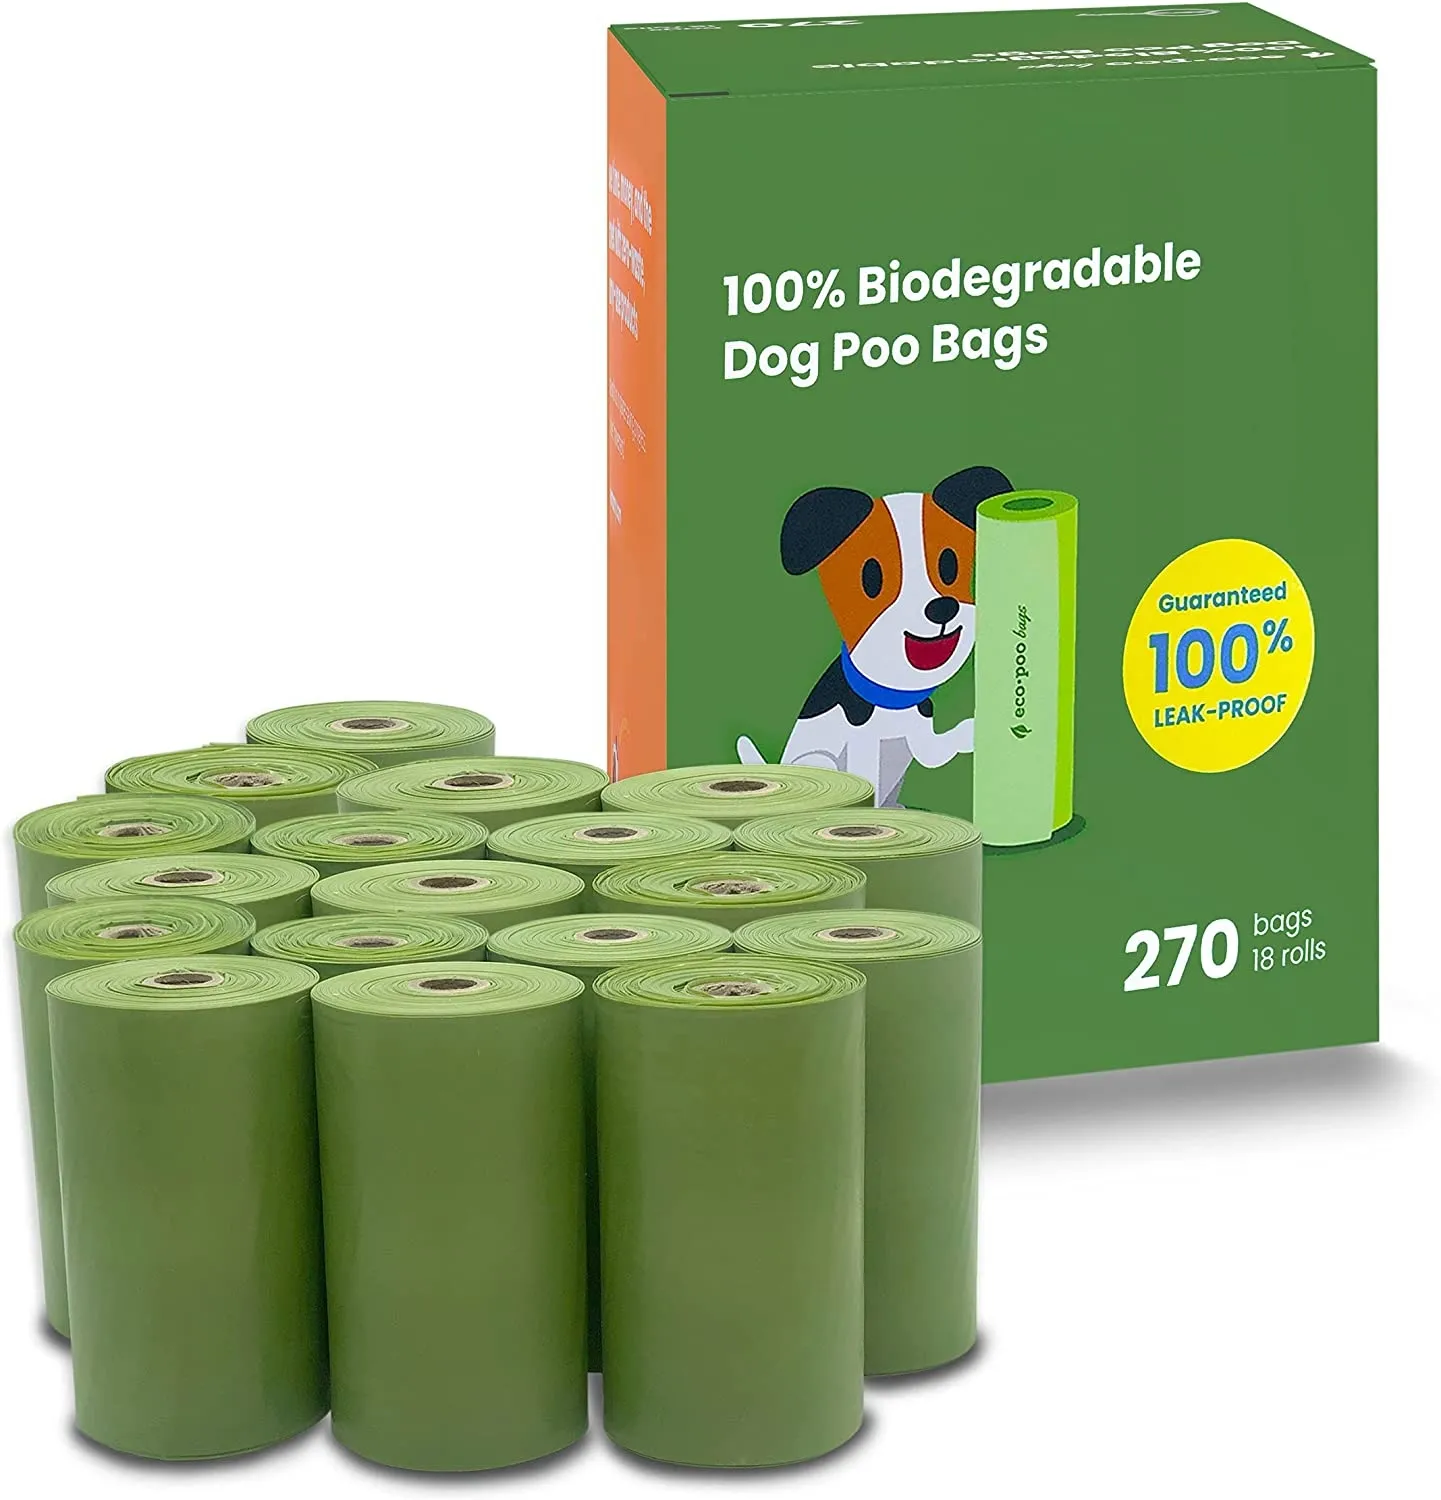 애완 동물을 위한 맞춤형 친환경 옥수수 전분 기반 향기 퇴비성 생분해성 개 똥 가방